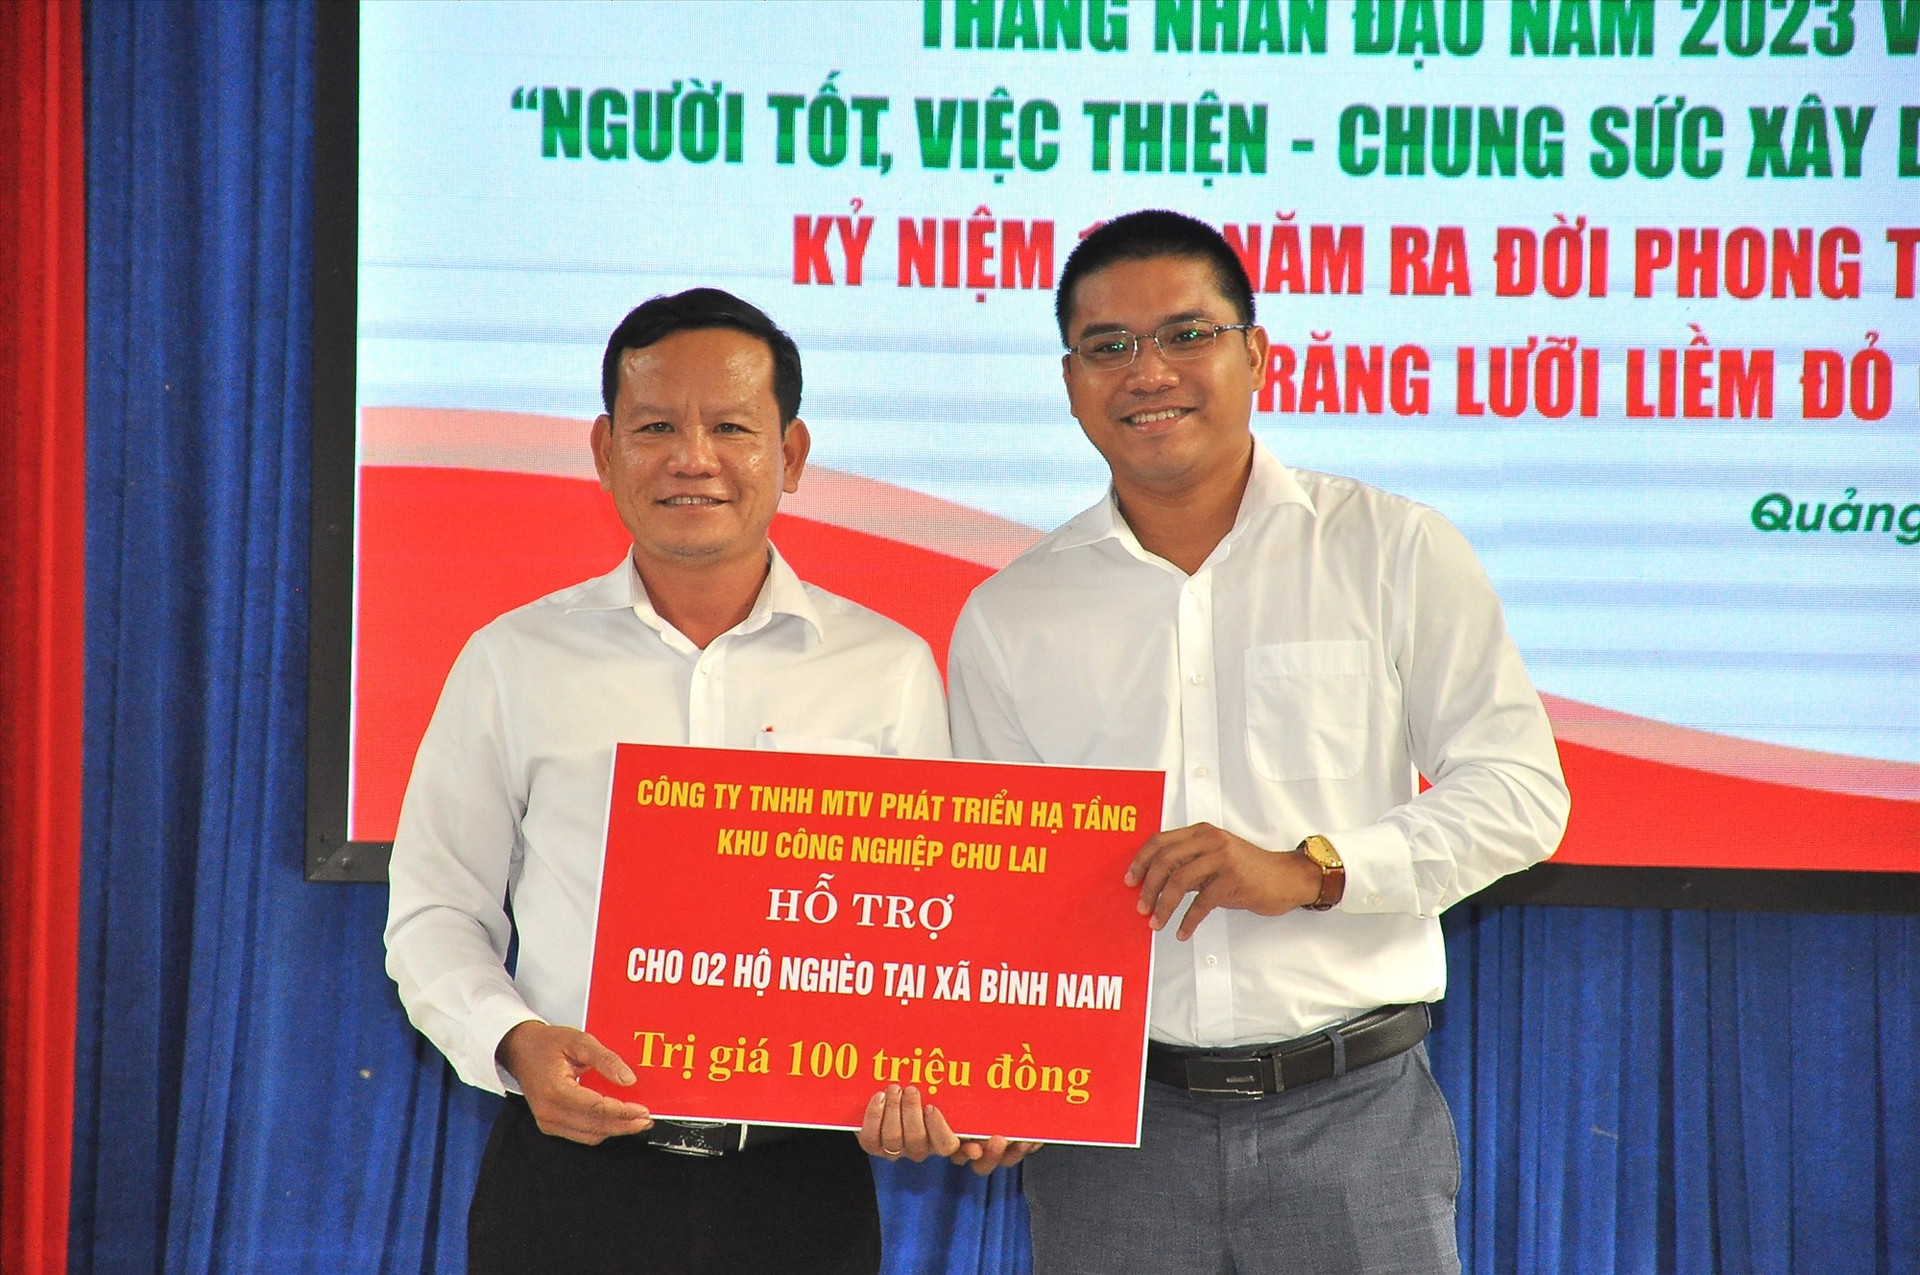 Đại diện Công ty TNHH MTV Phát triển hạ tầng khu công nghiệp Chu Lai hỗ trợ 100 triệu đồng xây dựng nhà ở cho 2 hộ nghèo xã Bình Nam tại lễ phát động Tháng nhân đạo. Ảnh: V.A